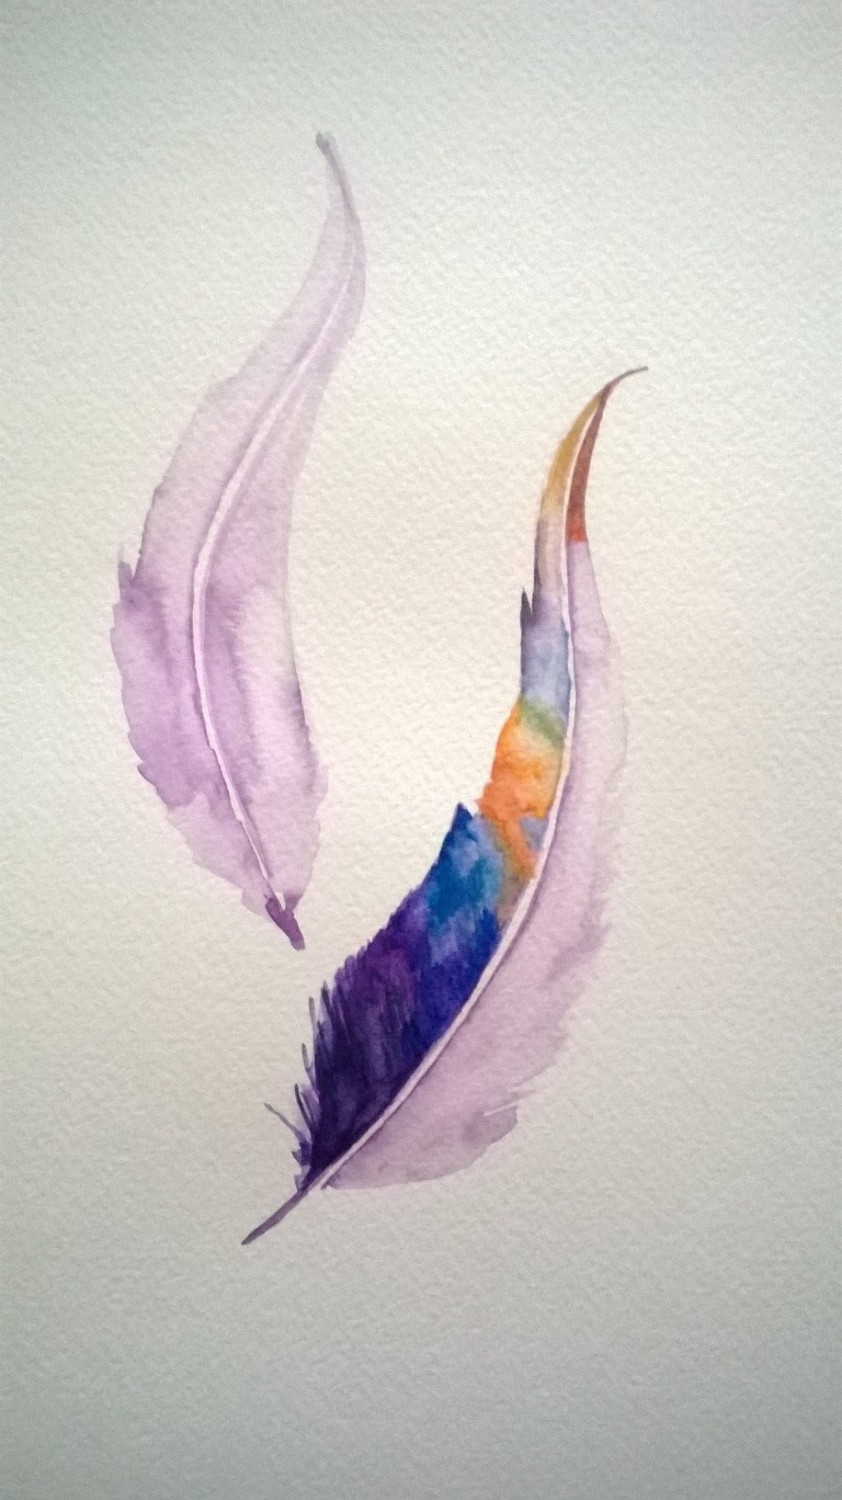 Work In Progress: Feathers